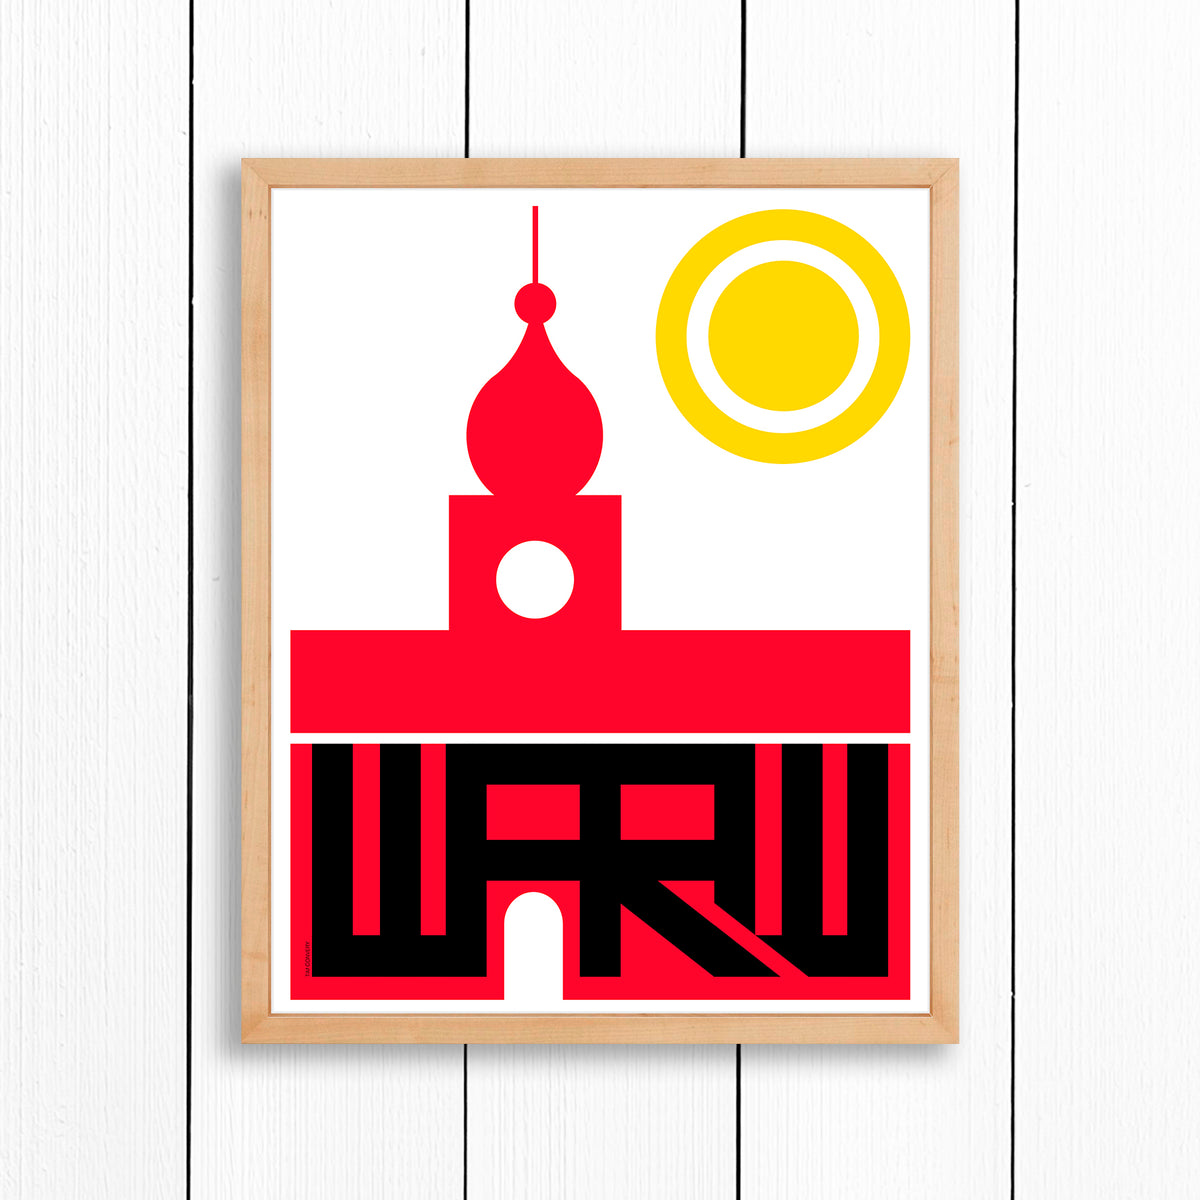 WARSAW / PRINT